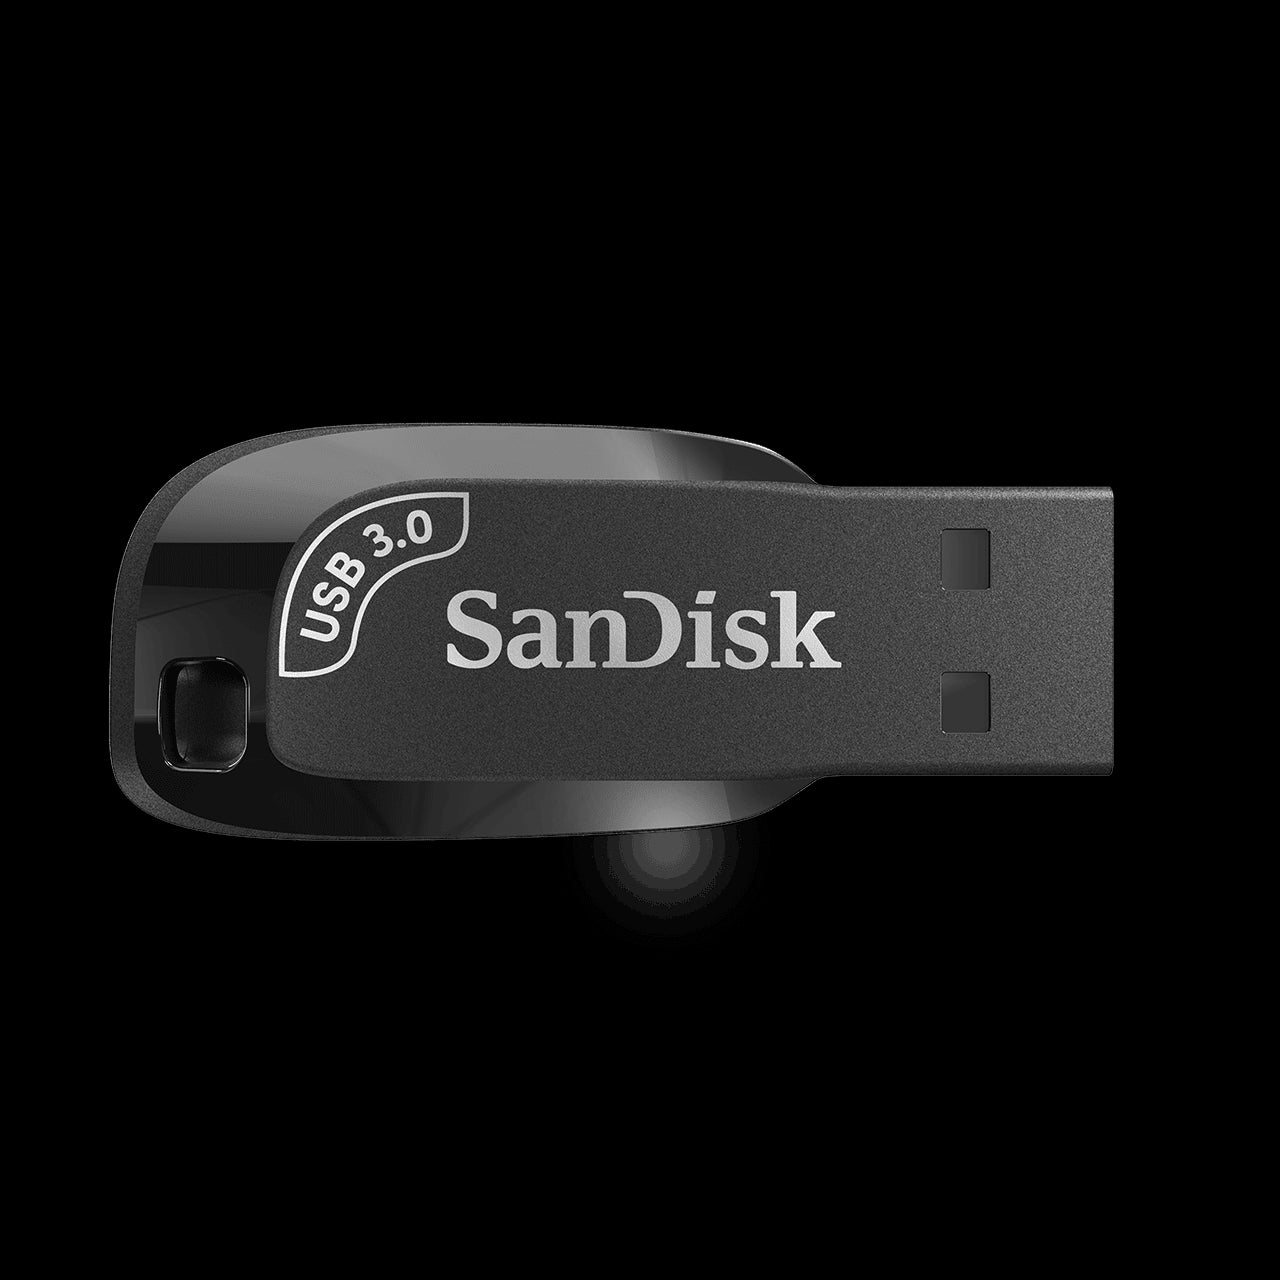 Memoria USB Flash SanDisk Ultra Shift USB 3.0 128 GB